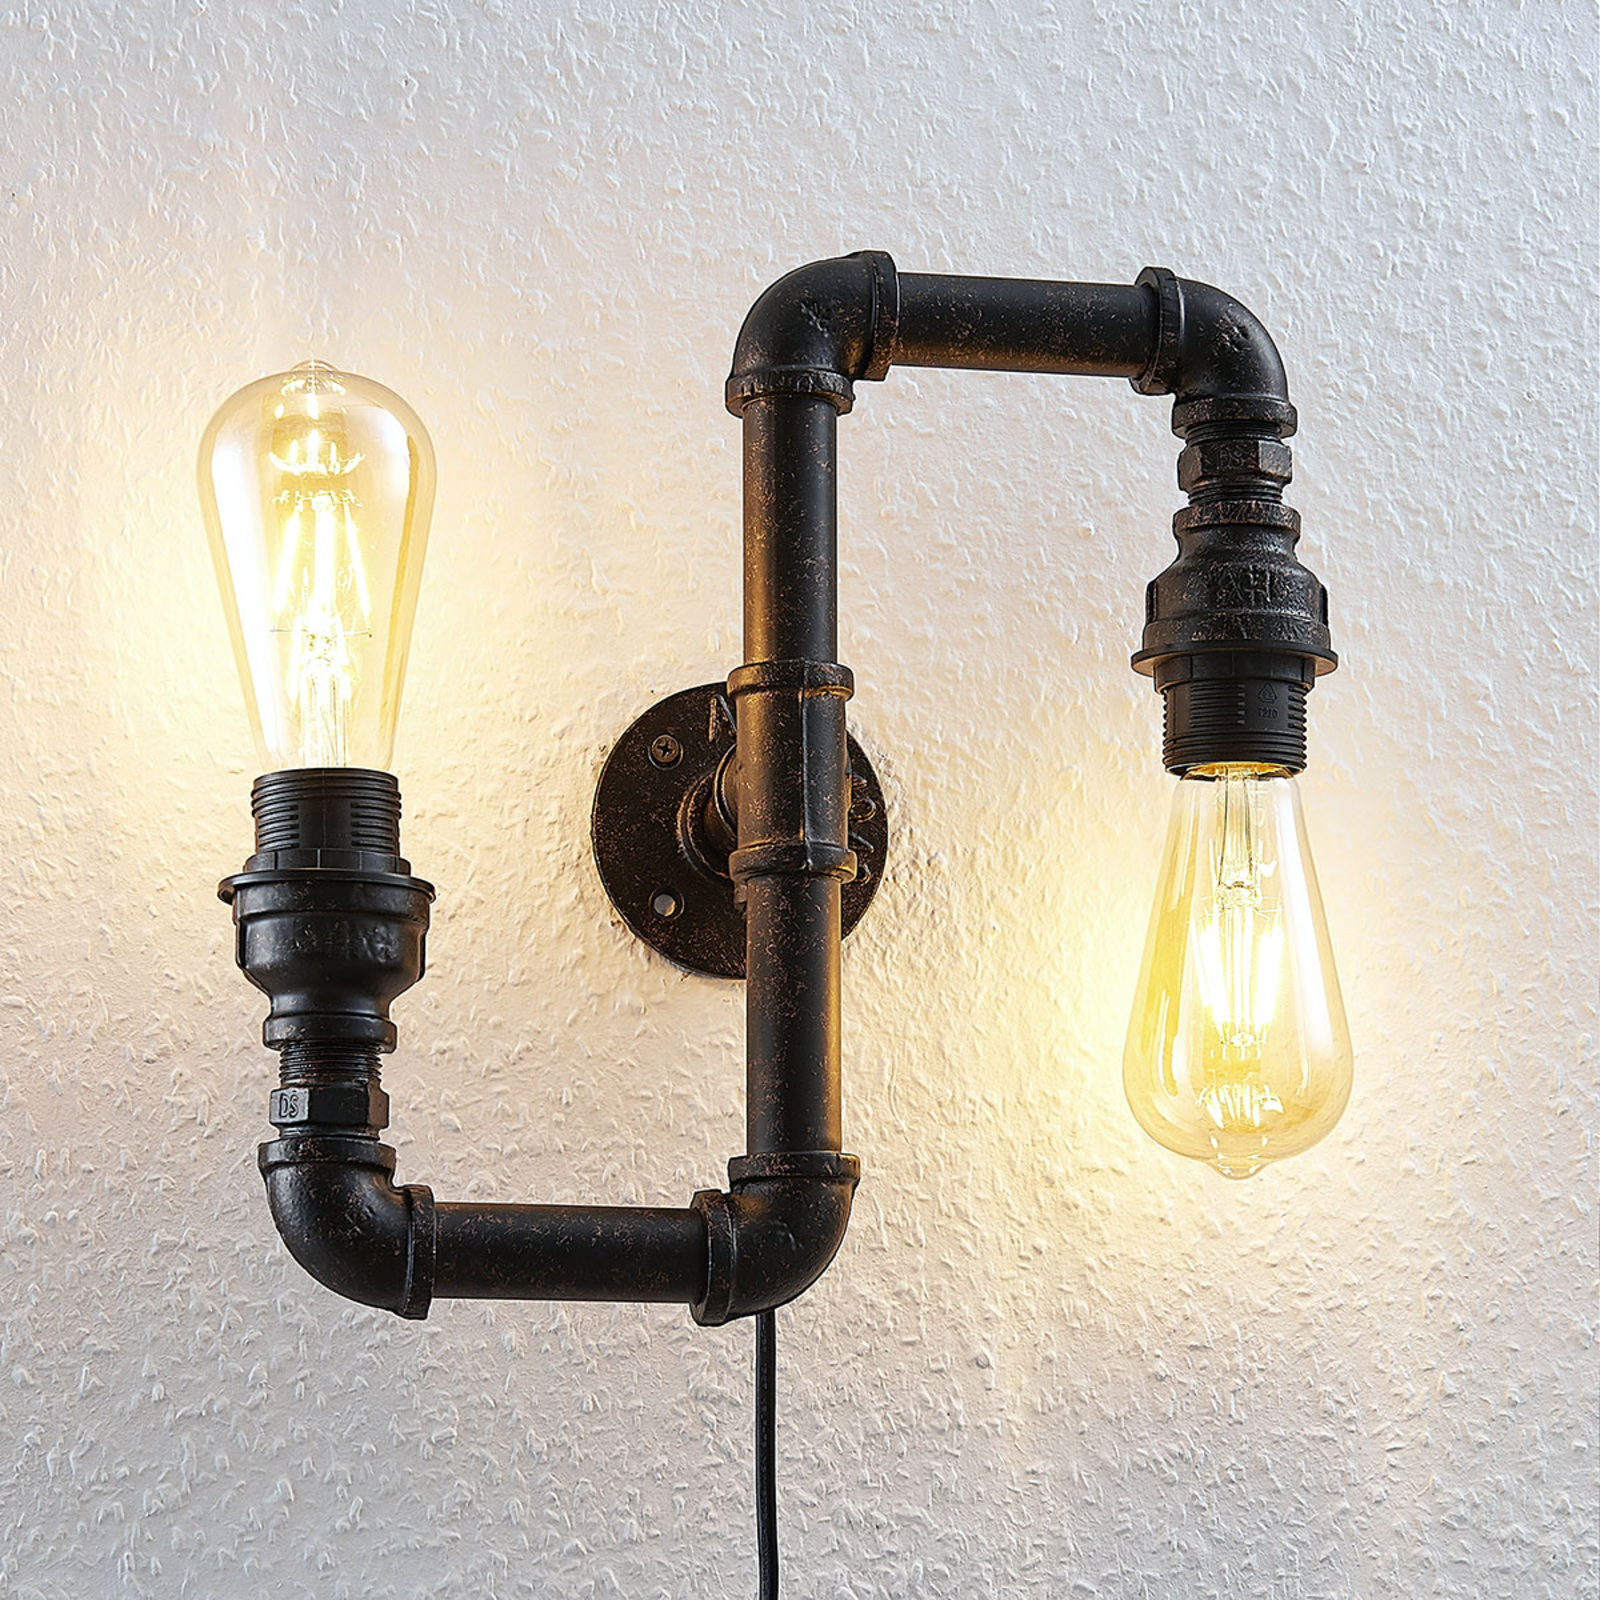 Vegglampe Josip i industridesign, up & down